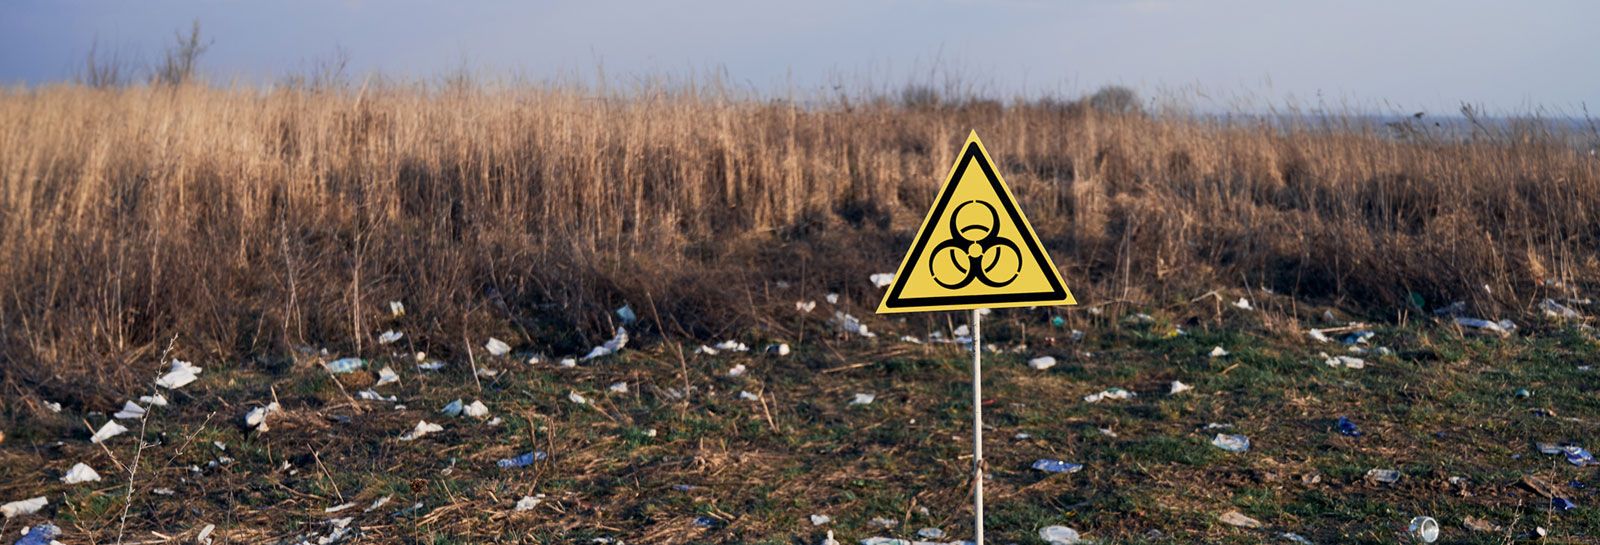 Waste ground with biohazard sign banner image